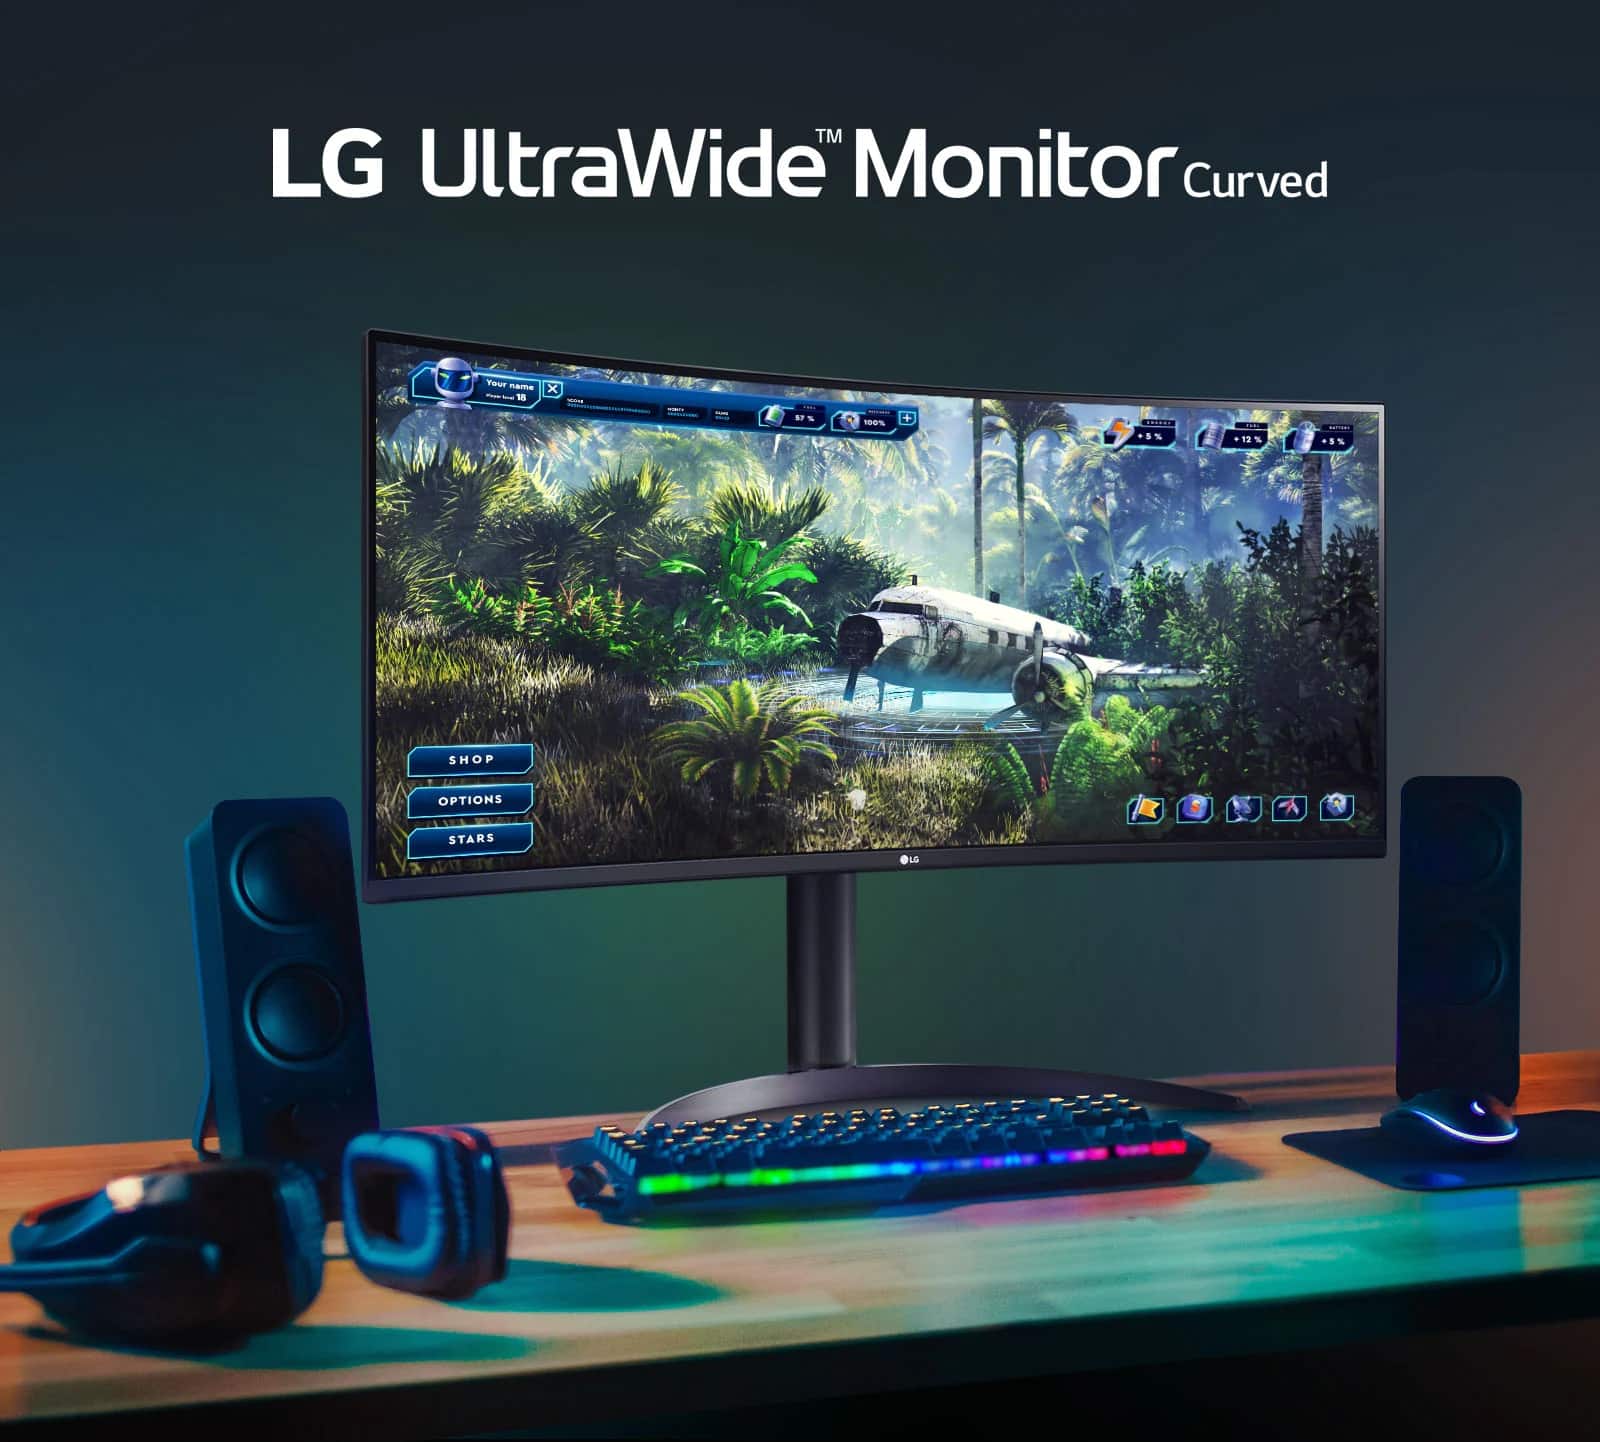 LG UltraWide